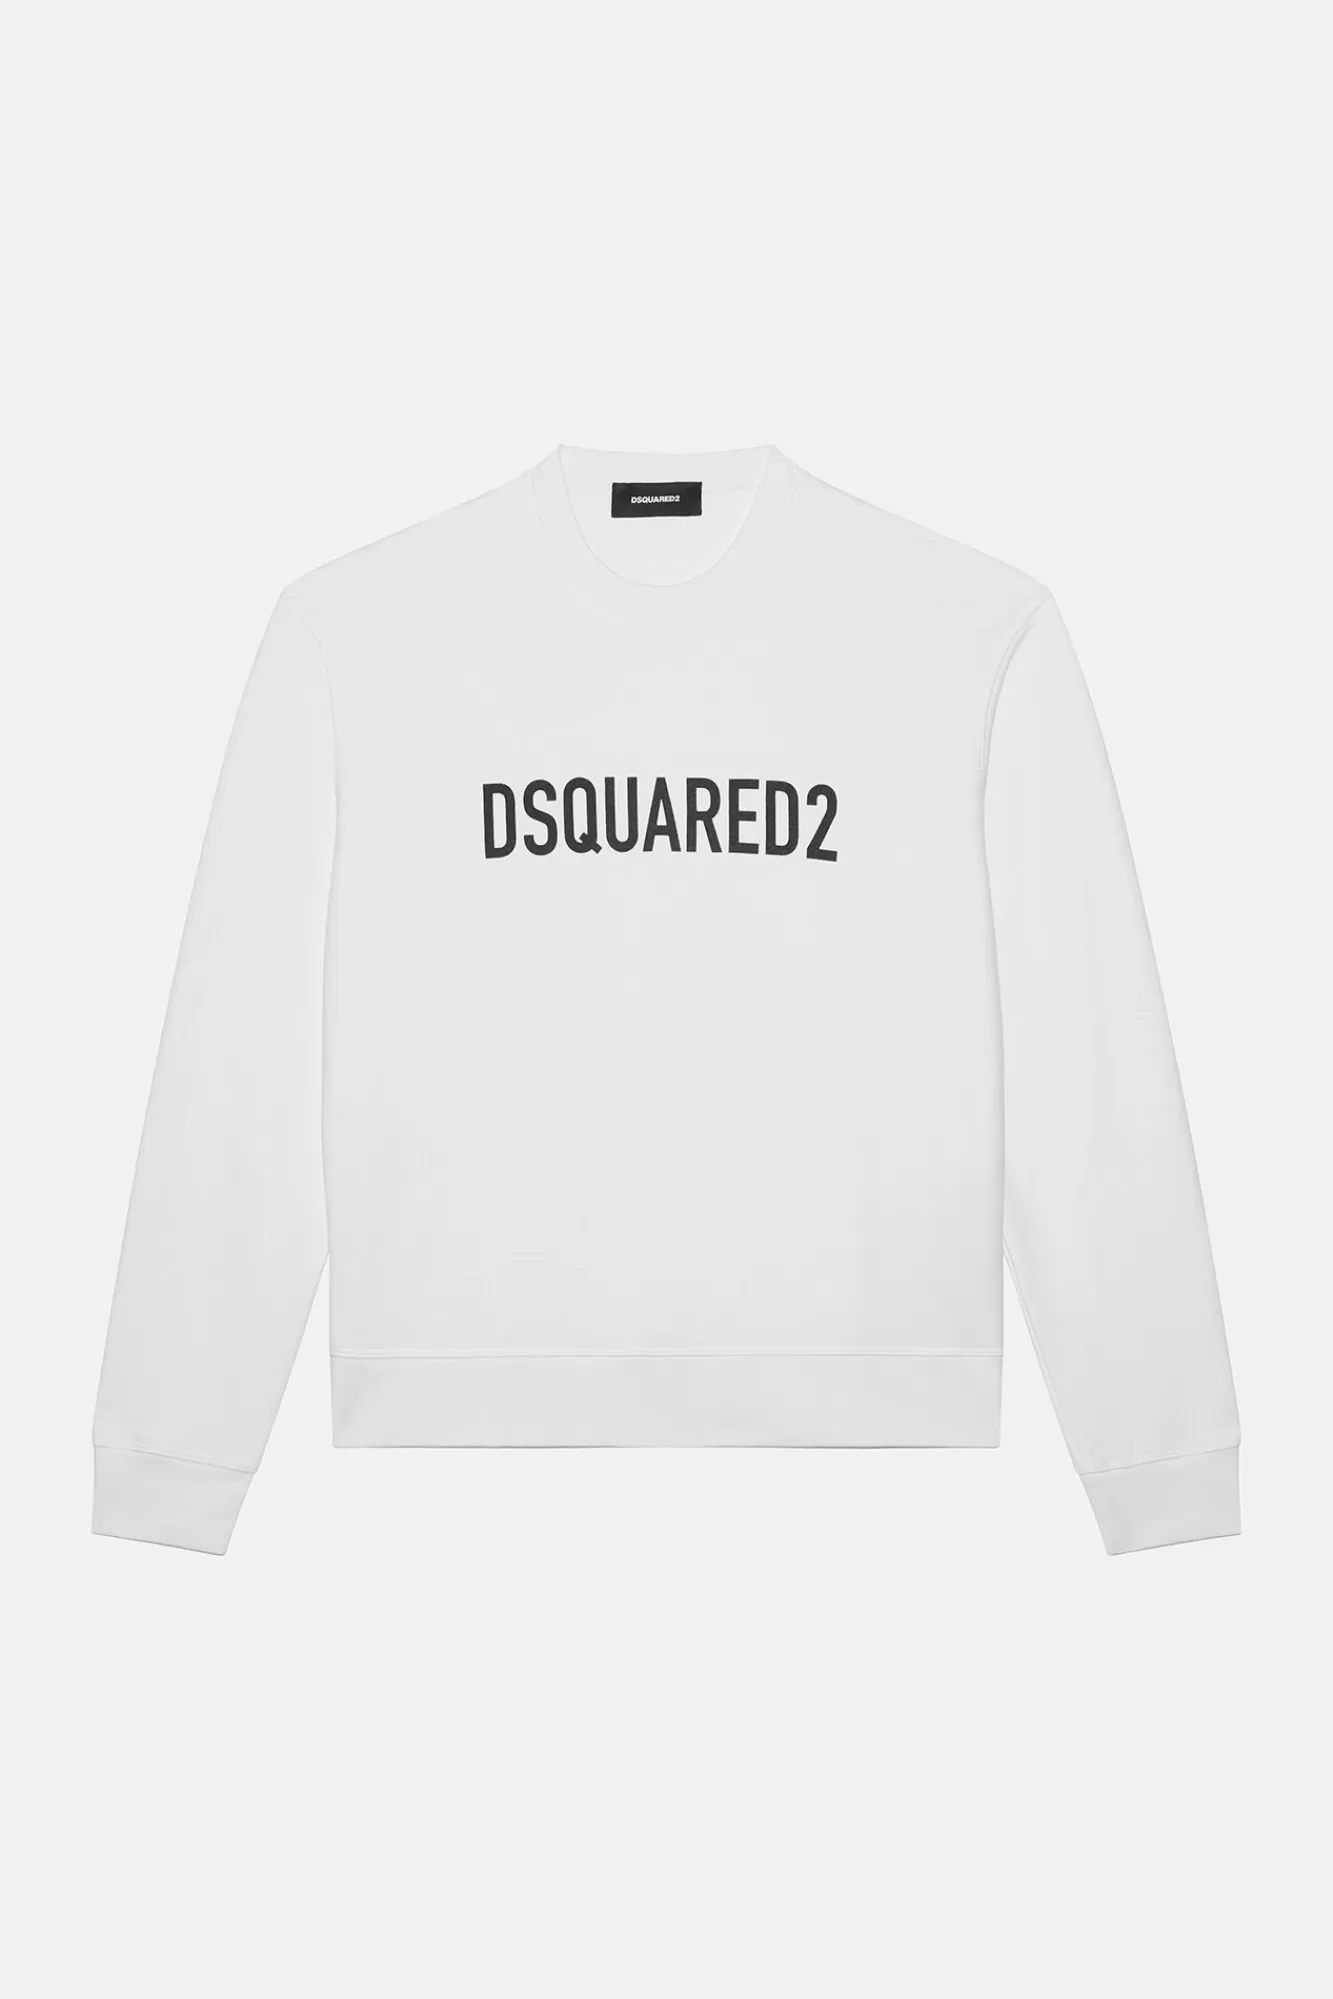 Technicolour Cool Sweater<Dsquared2 Store